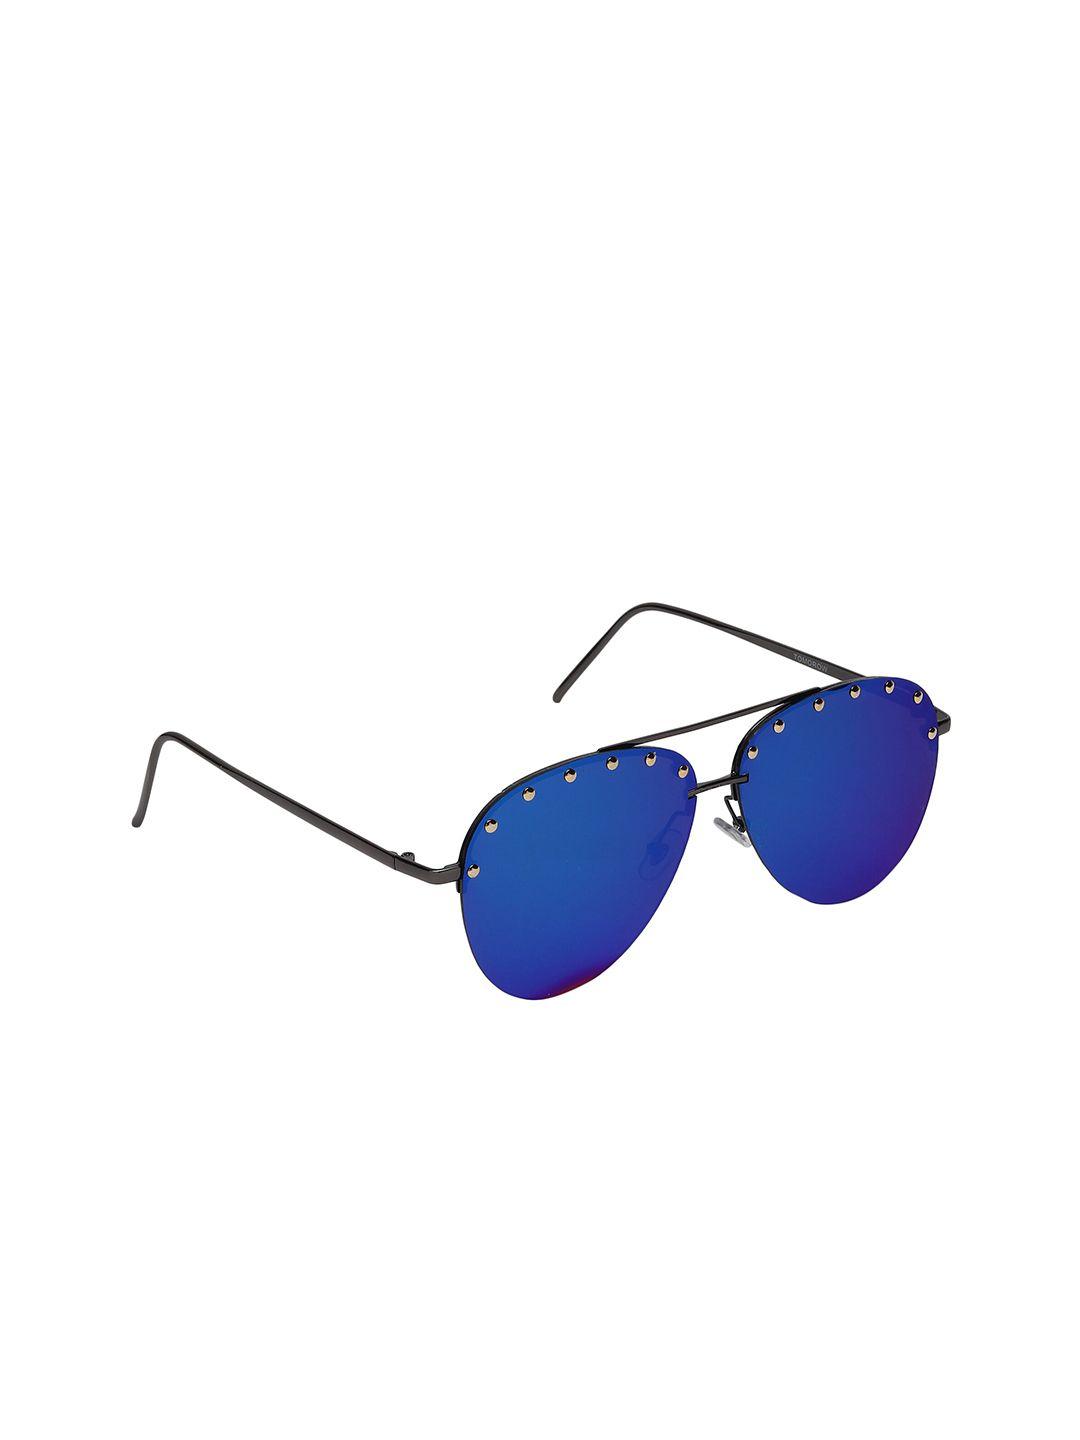 swiss design blue lens & black aviator sunglasses with uv protected lens sdsg-tomorow-07